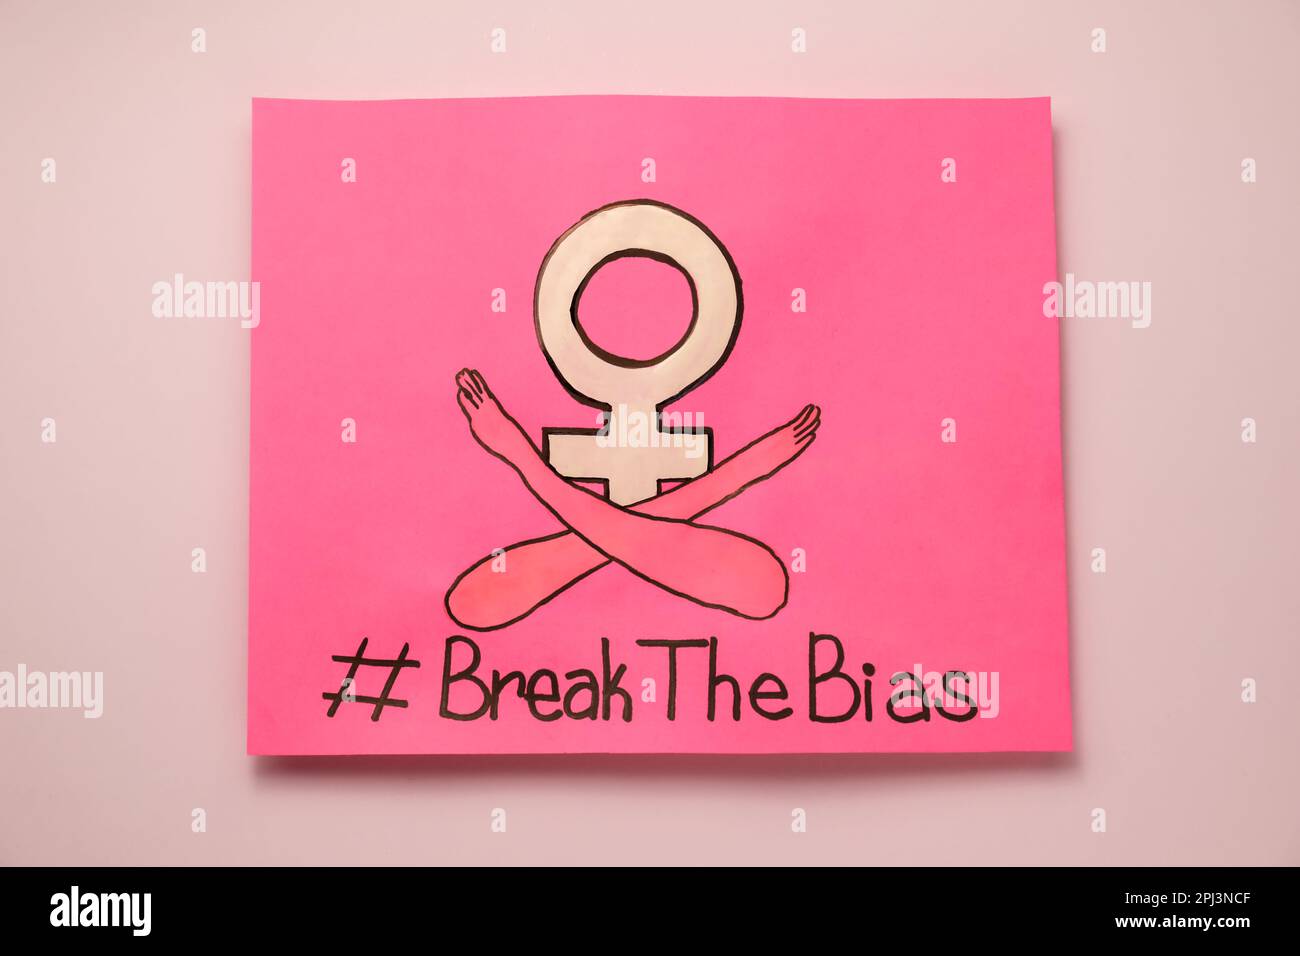 Karte mit Hashtag BreakTheBias, weibliches Geschlechtssymbol und Zeichnung der gekreuzten Arme auf pinkfarbenem Hintergrund, Draufsicht Stockfoto